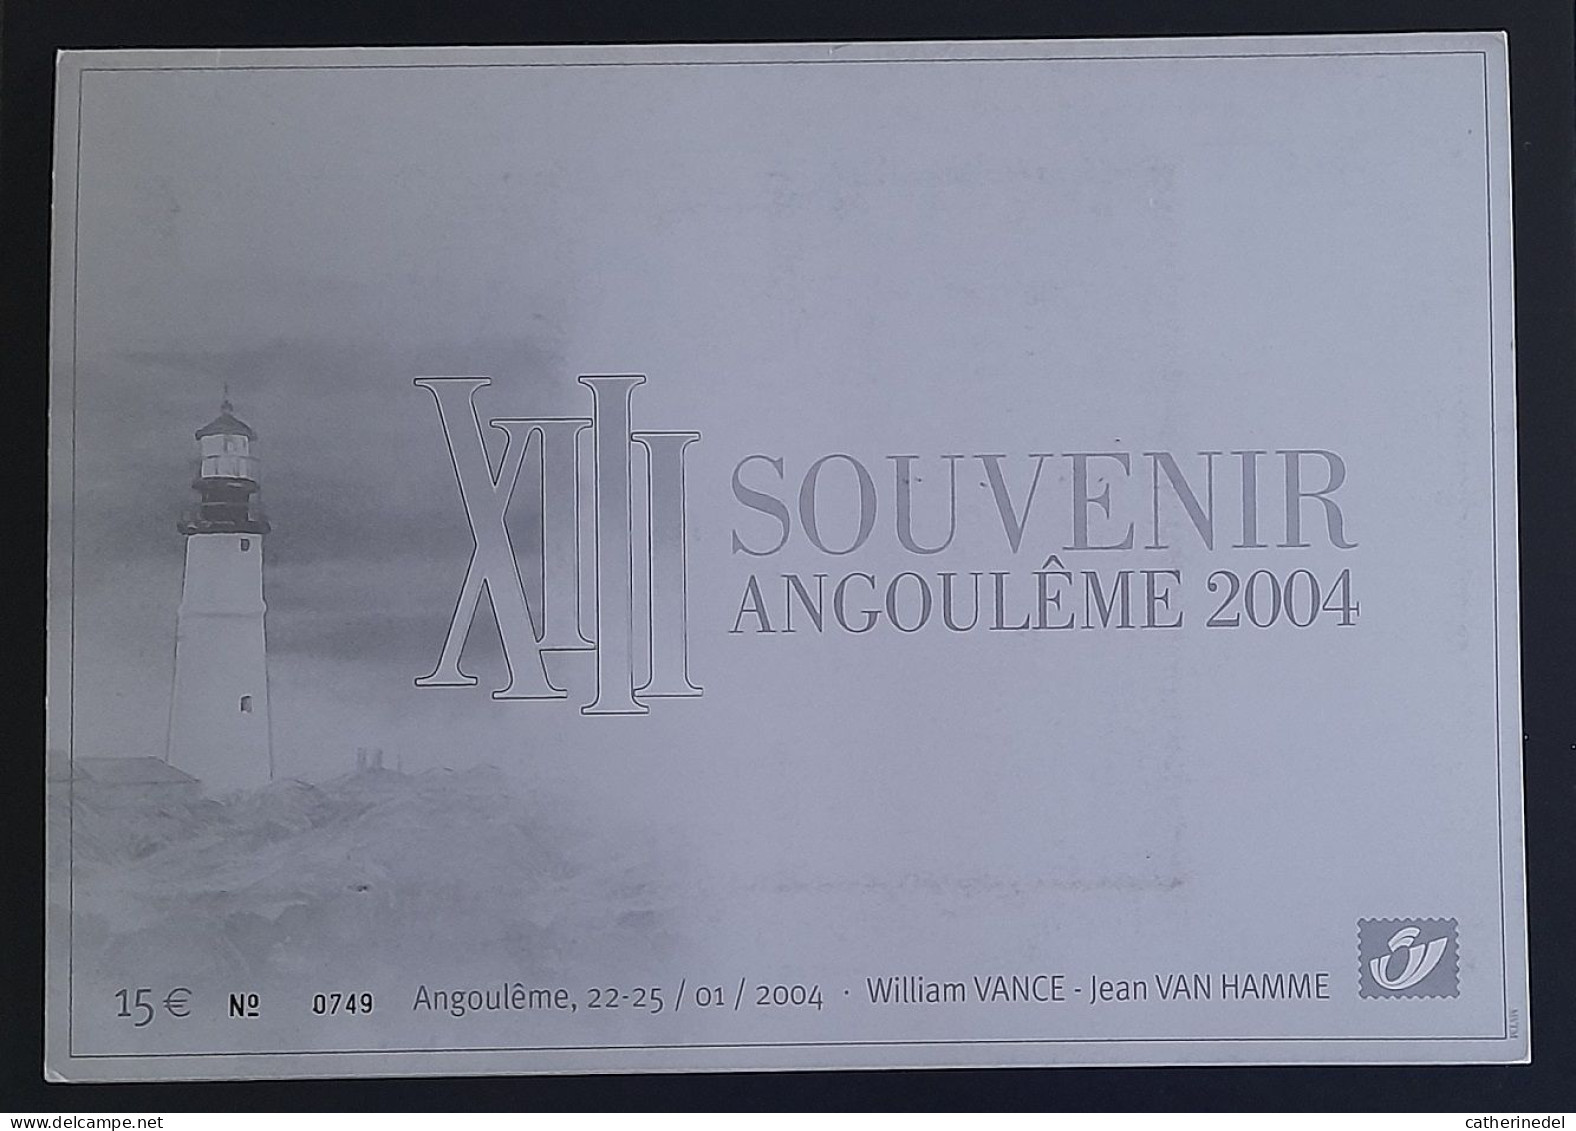 Année 2004 : 3233 - Pochette Souvenir Angoulème 2004 XIII - William VANCE - Jean VAN HAMME - Numérotée 0749 - Philabédés (fumetti)